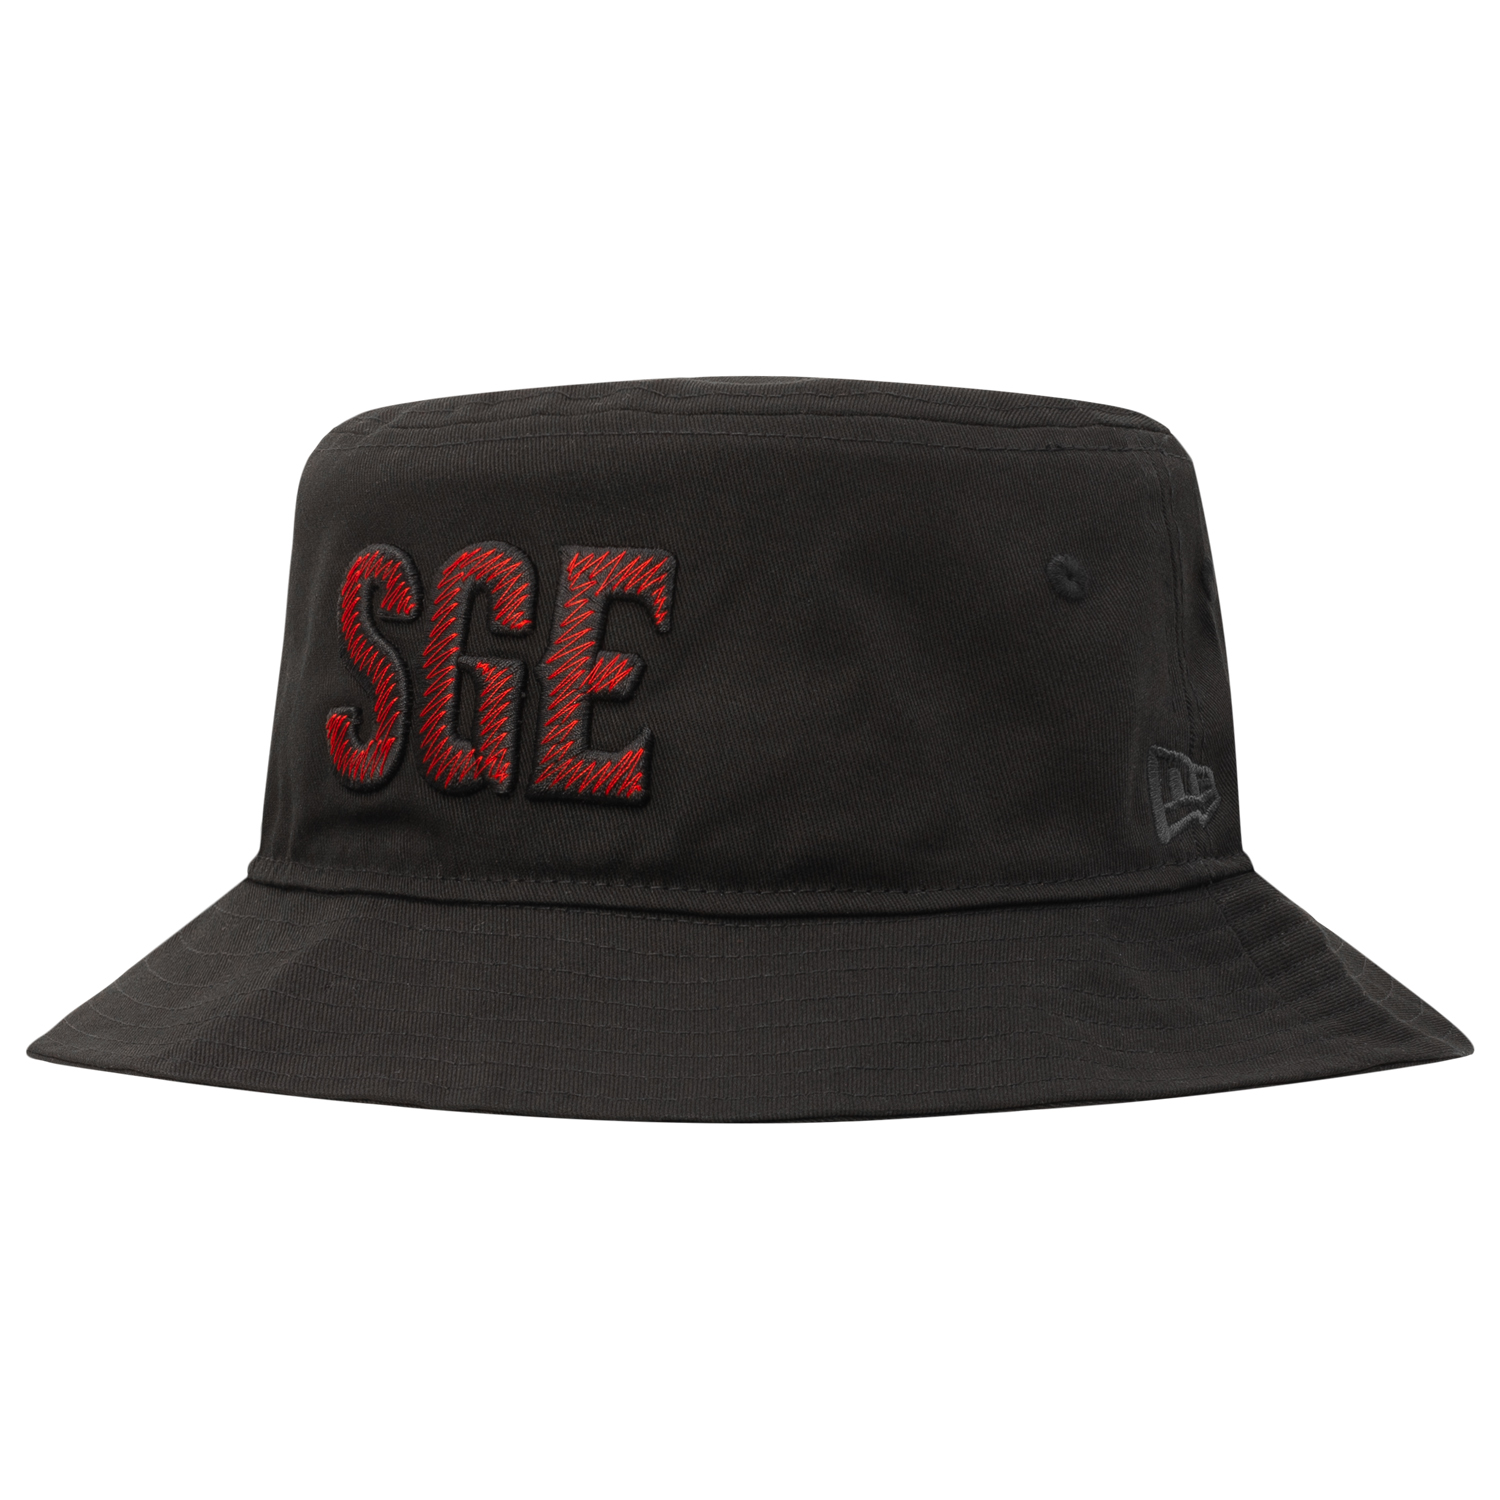 Bild 2: Bucket Hat SGE Red/Black